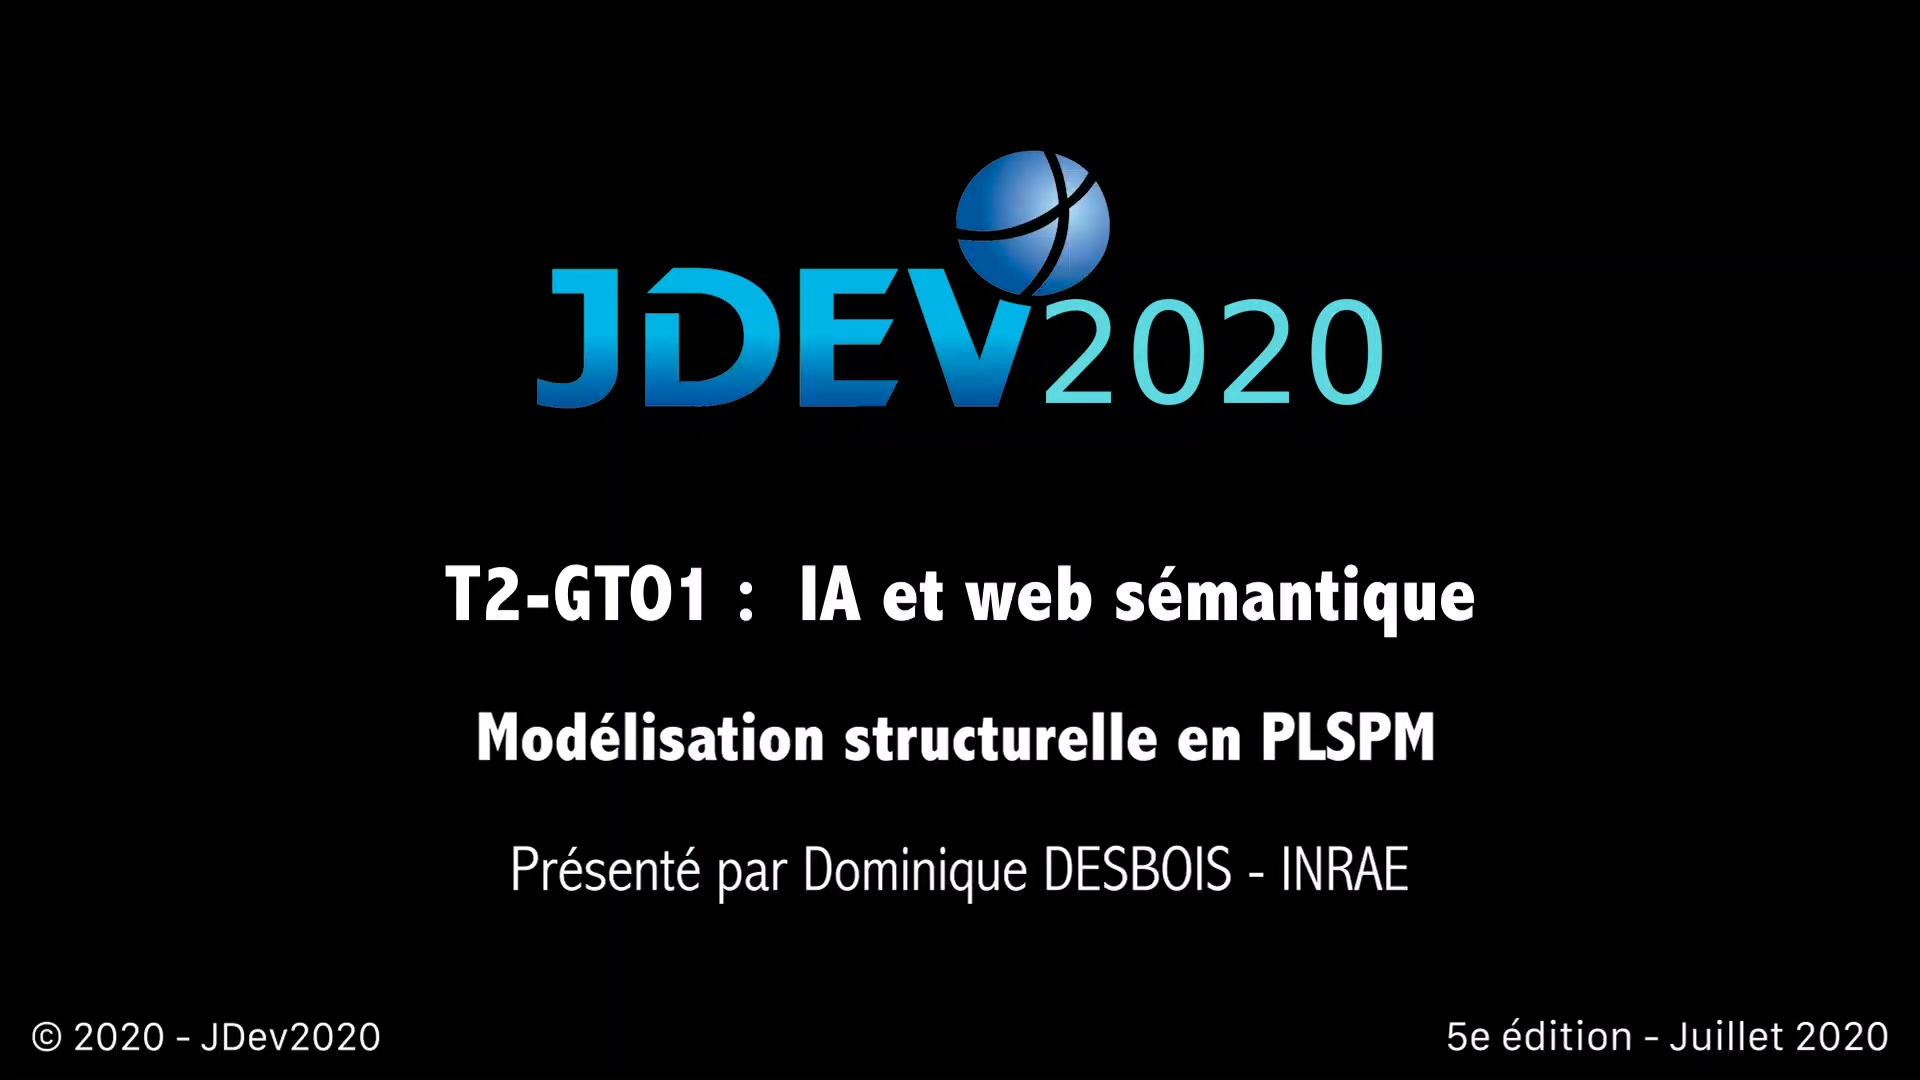 JDev2020 : T2_GT1 : IA et web sémantique, Modélisation structurelle en PLSPM